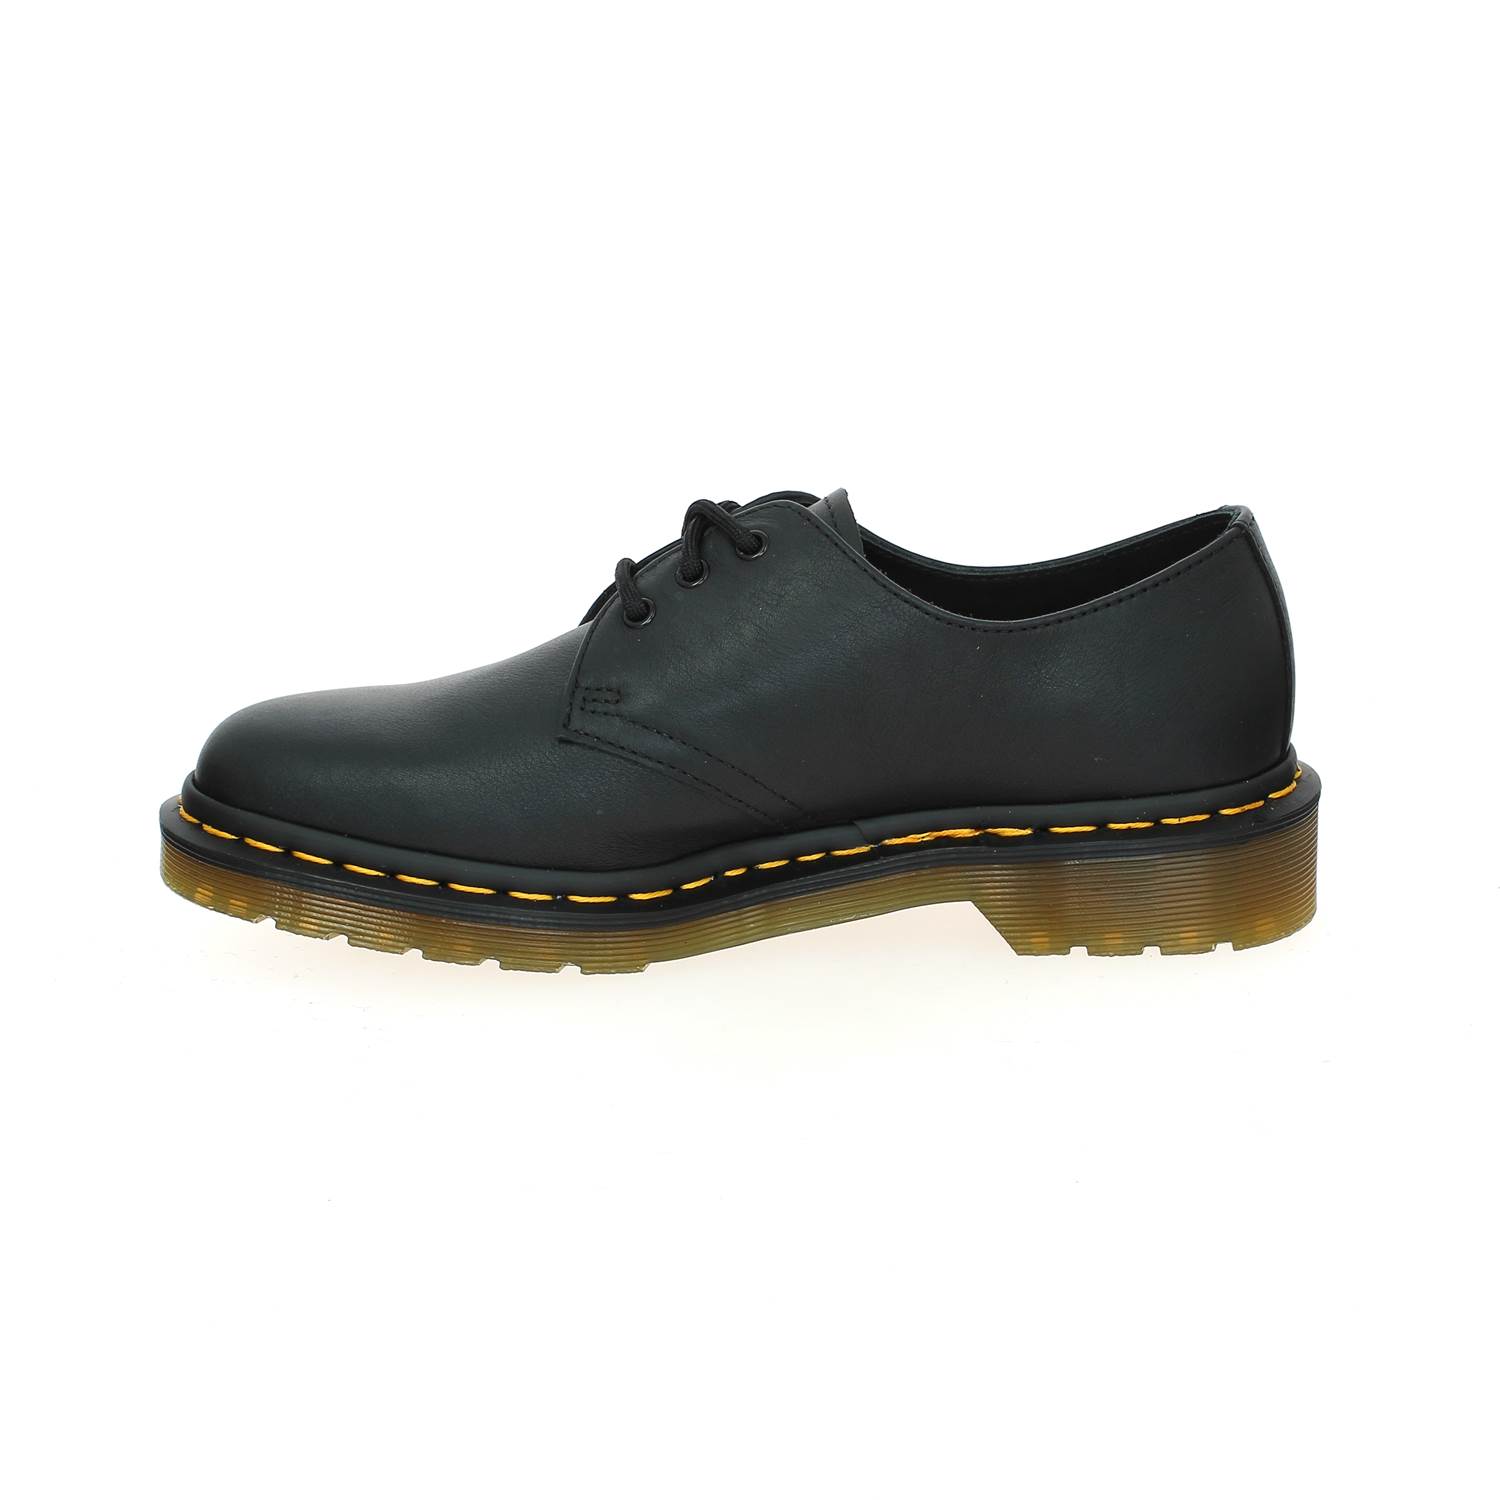 05 - DOC1461 -  - Chaussures à lacets - Cuir